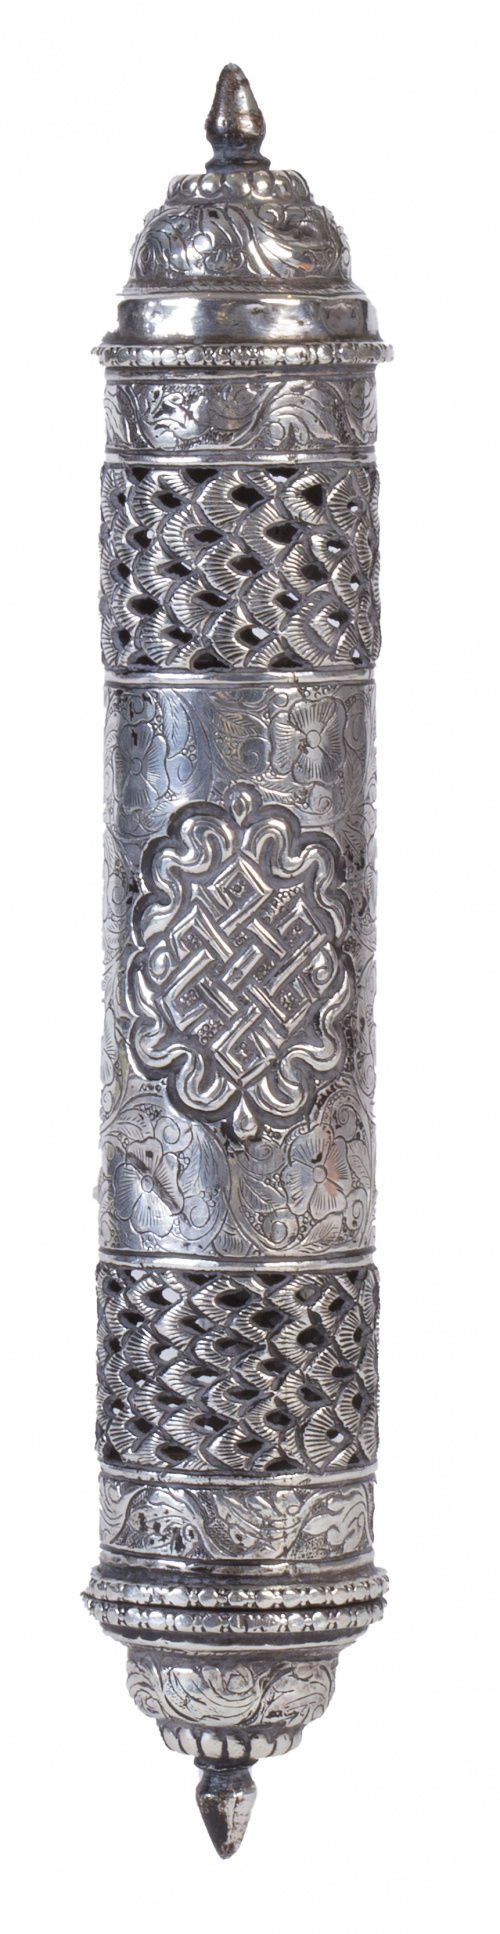 Rollo de la Torá de plata de decoración grabada, repujada y